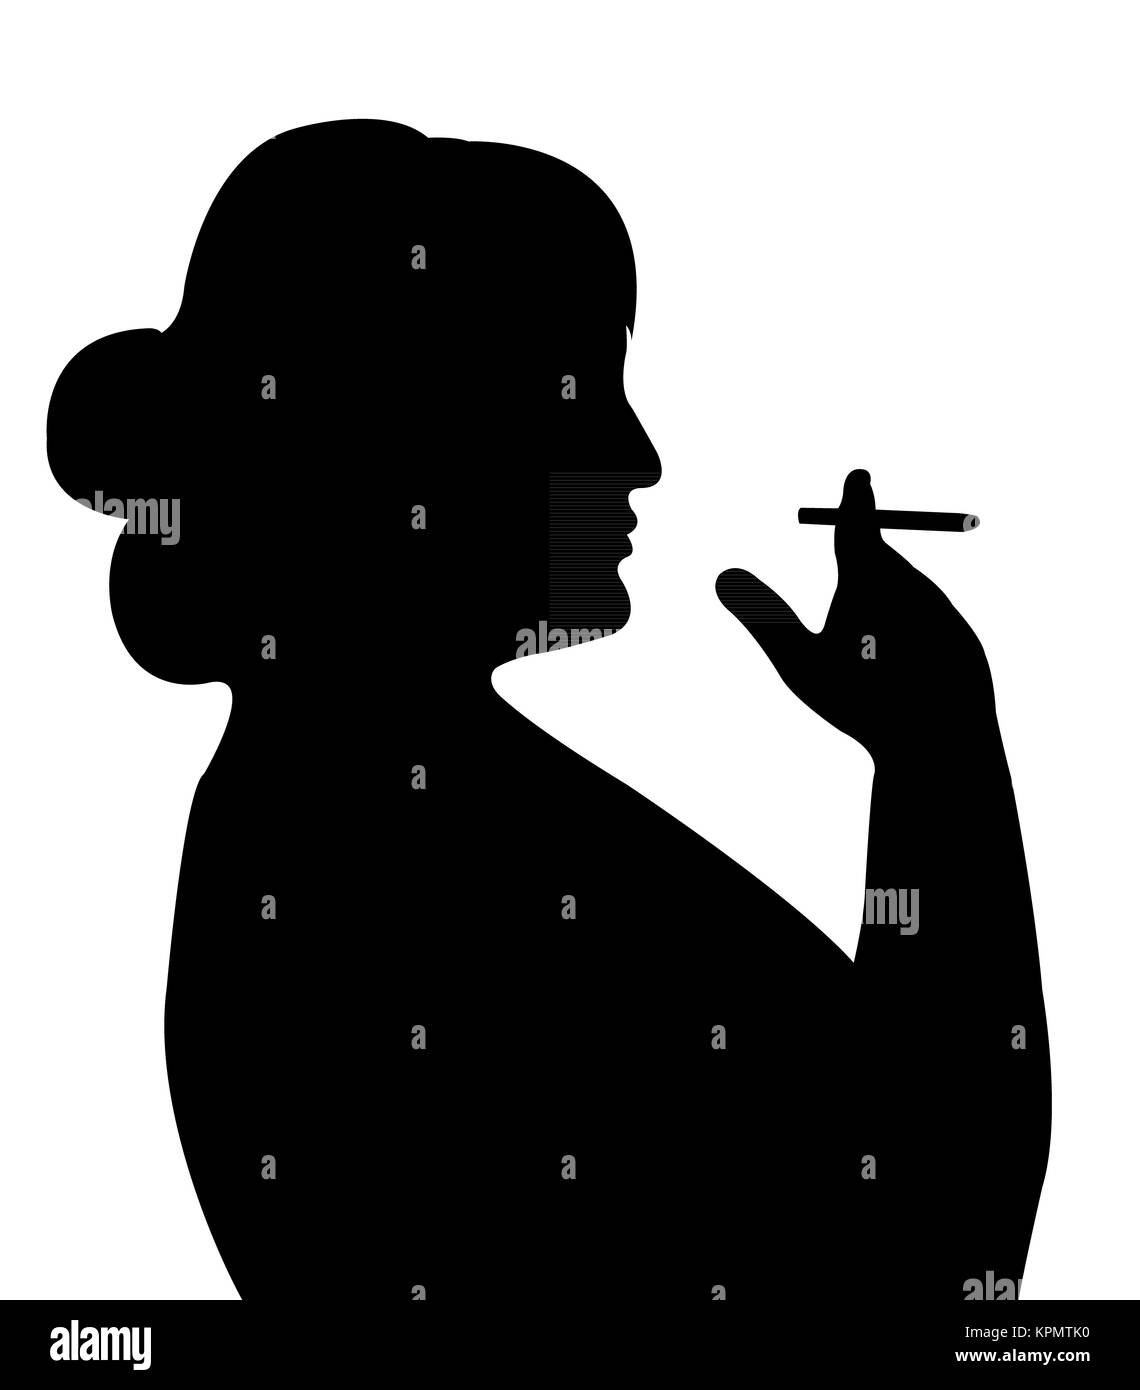 smoking woman silhouette Stock Photo